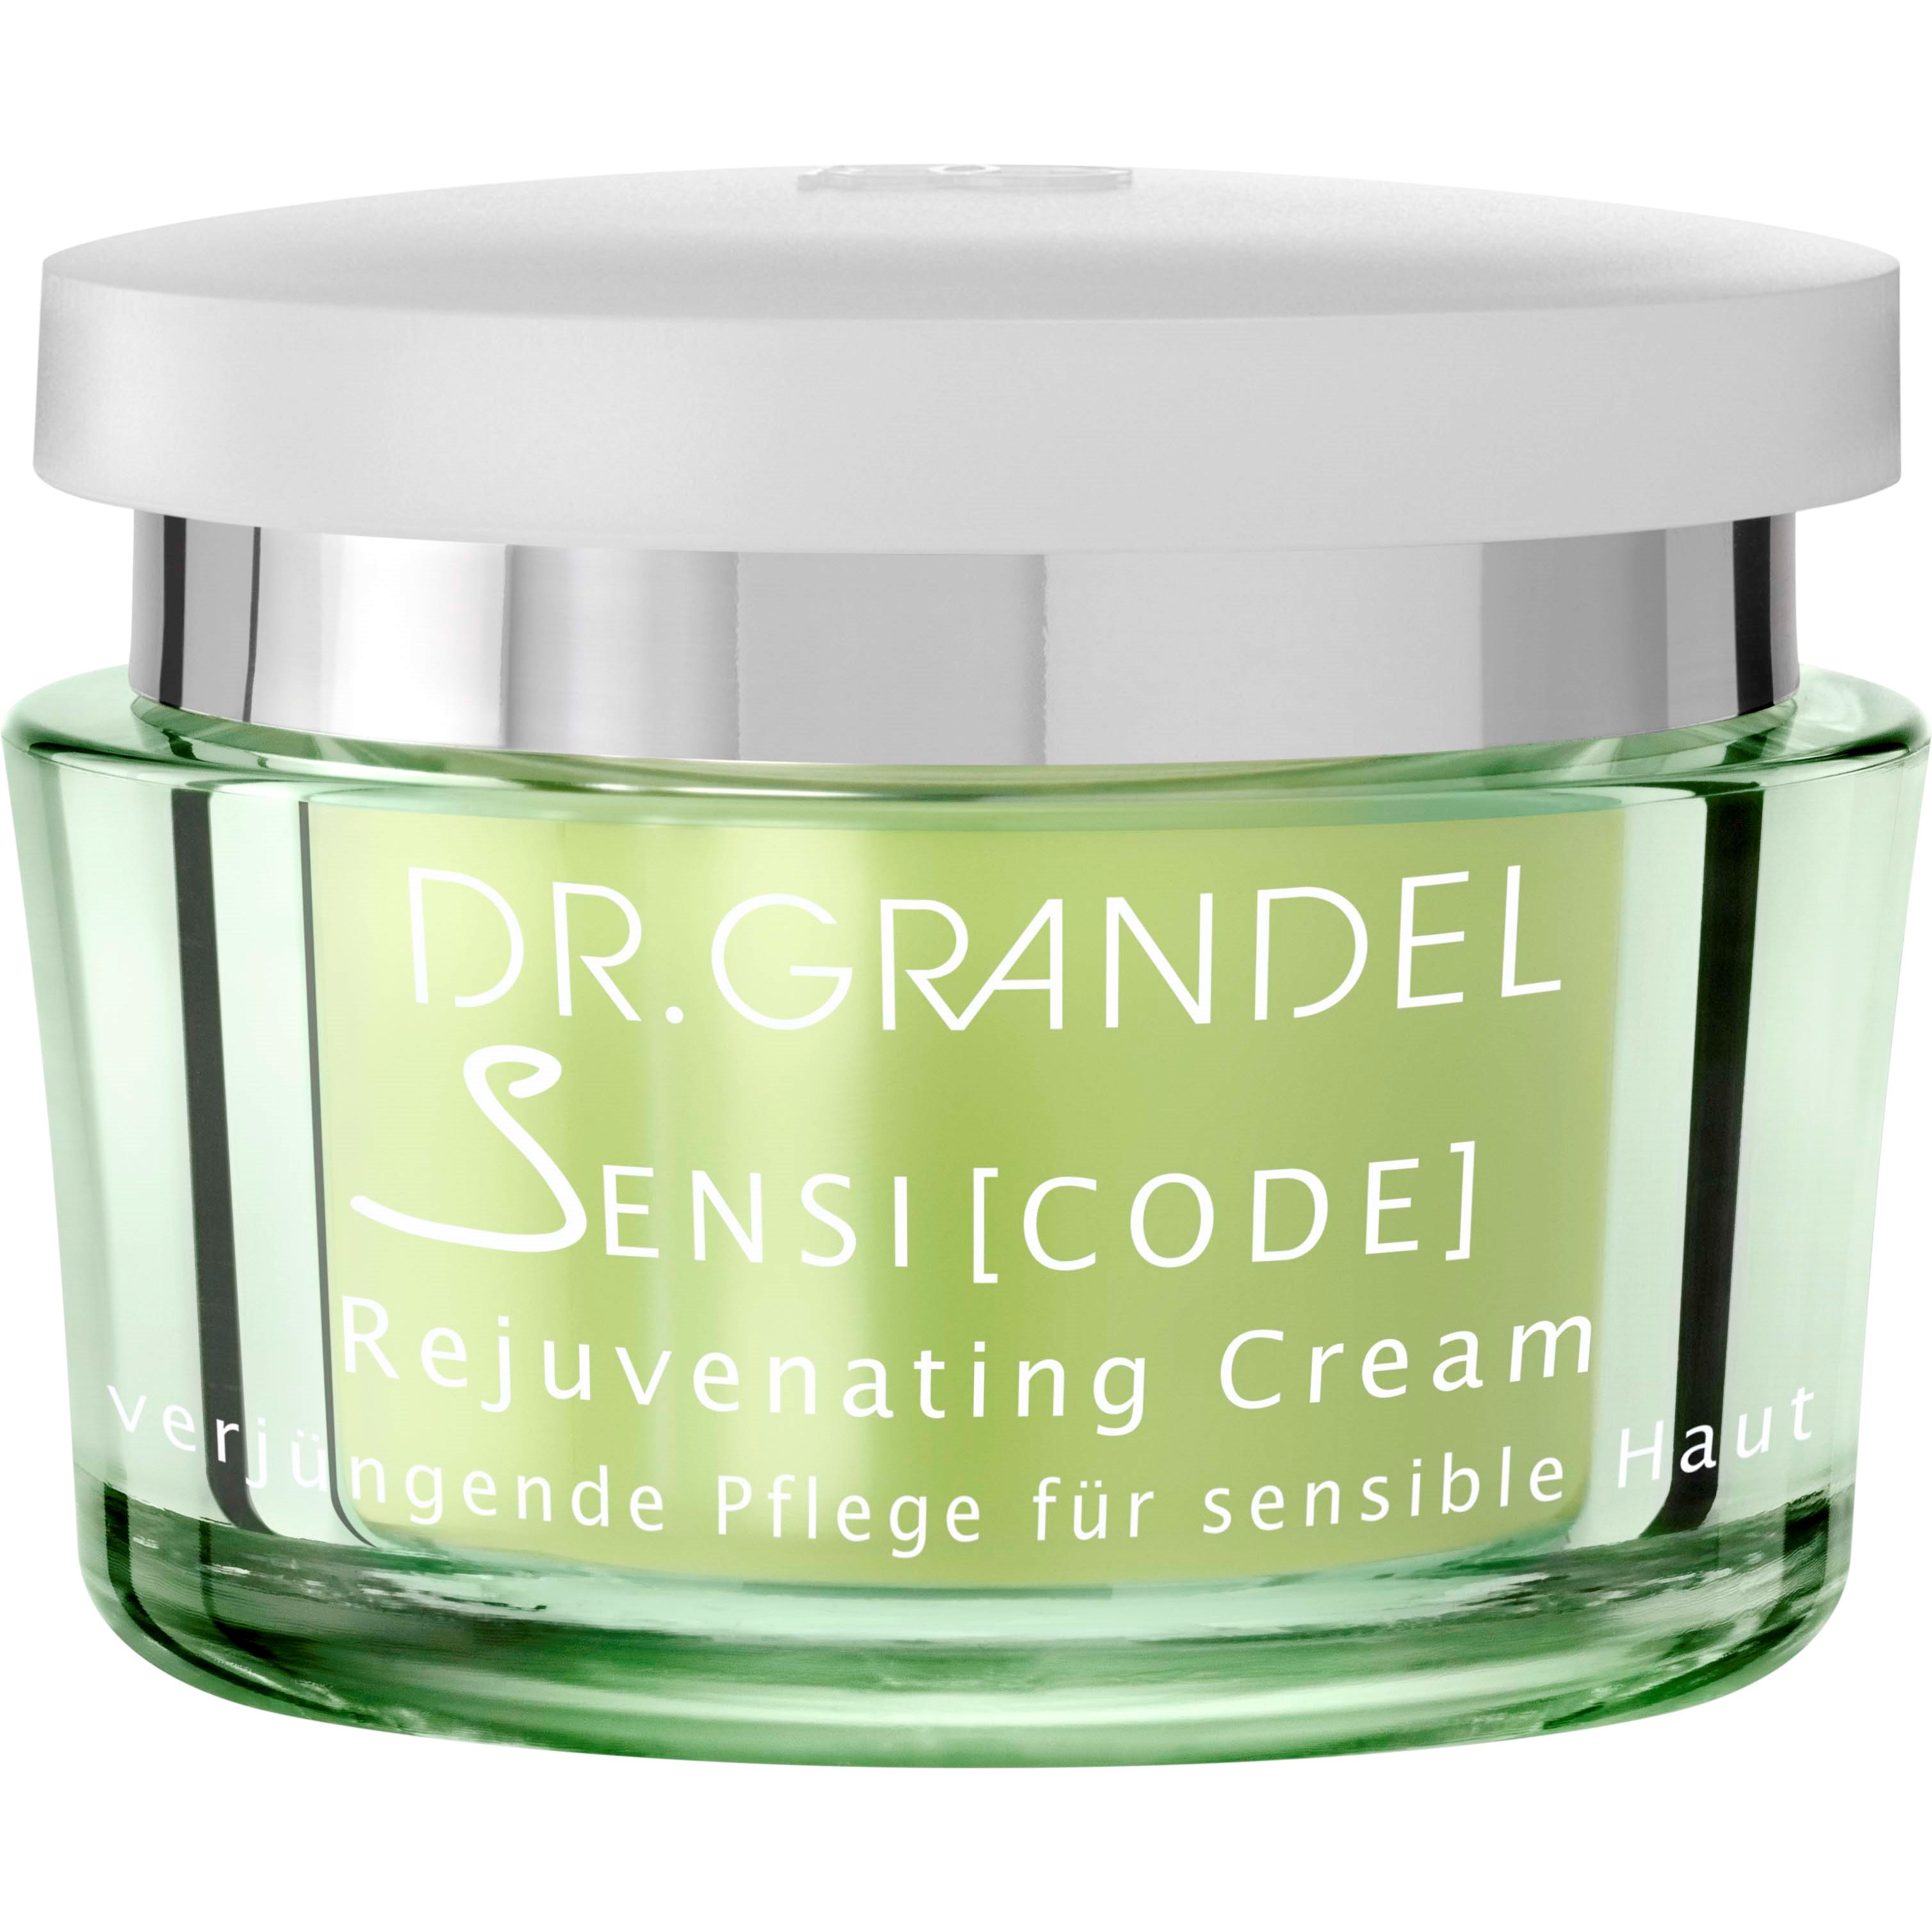 Dr. Grandel Sensicode Rejuvinating Cream 50 ml